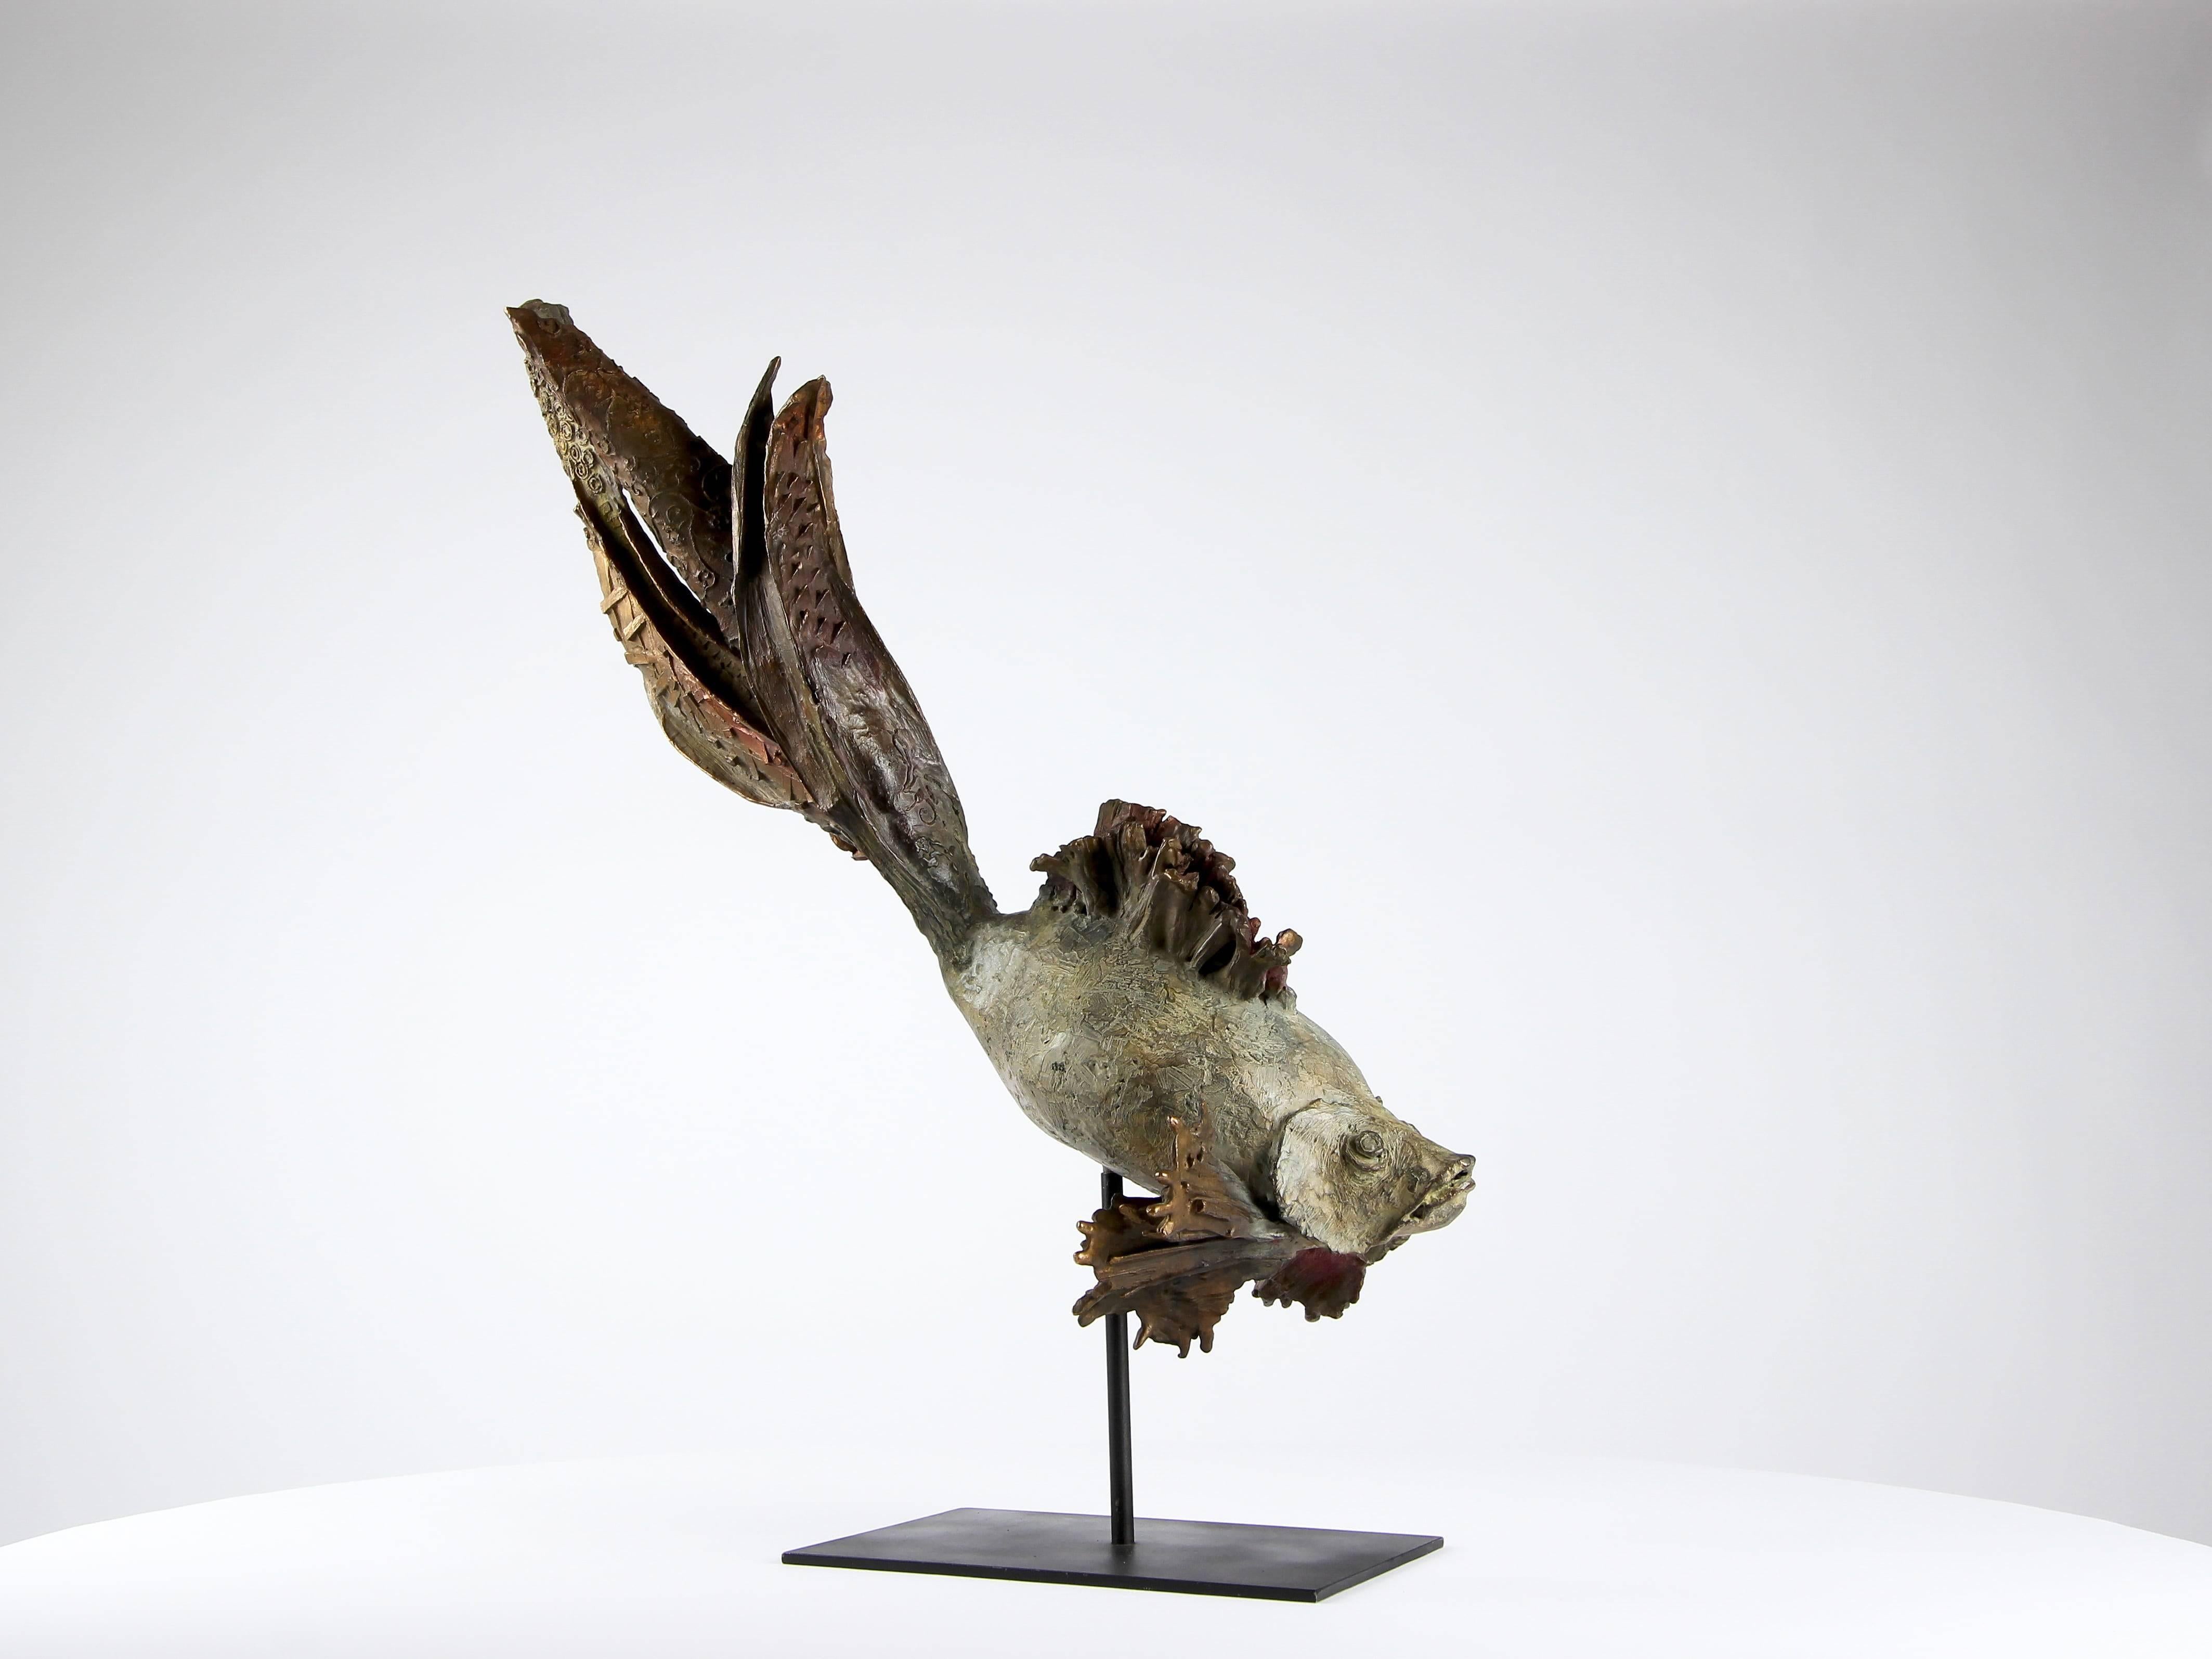 Der Siamesische Kampffisch "Princess" ist eine einmalige Skulptur des zeitgenössischen Künstlers Chésade, die das Interesse des Bildhauers an der Meereswelt zum Ausdruck bringt. Bronze, 44 cm × 60 cm × 25 cm.

Für Chésade ist das Meer "ein